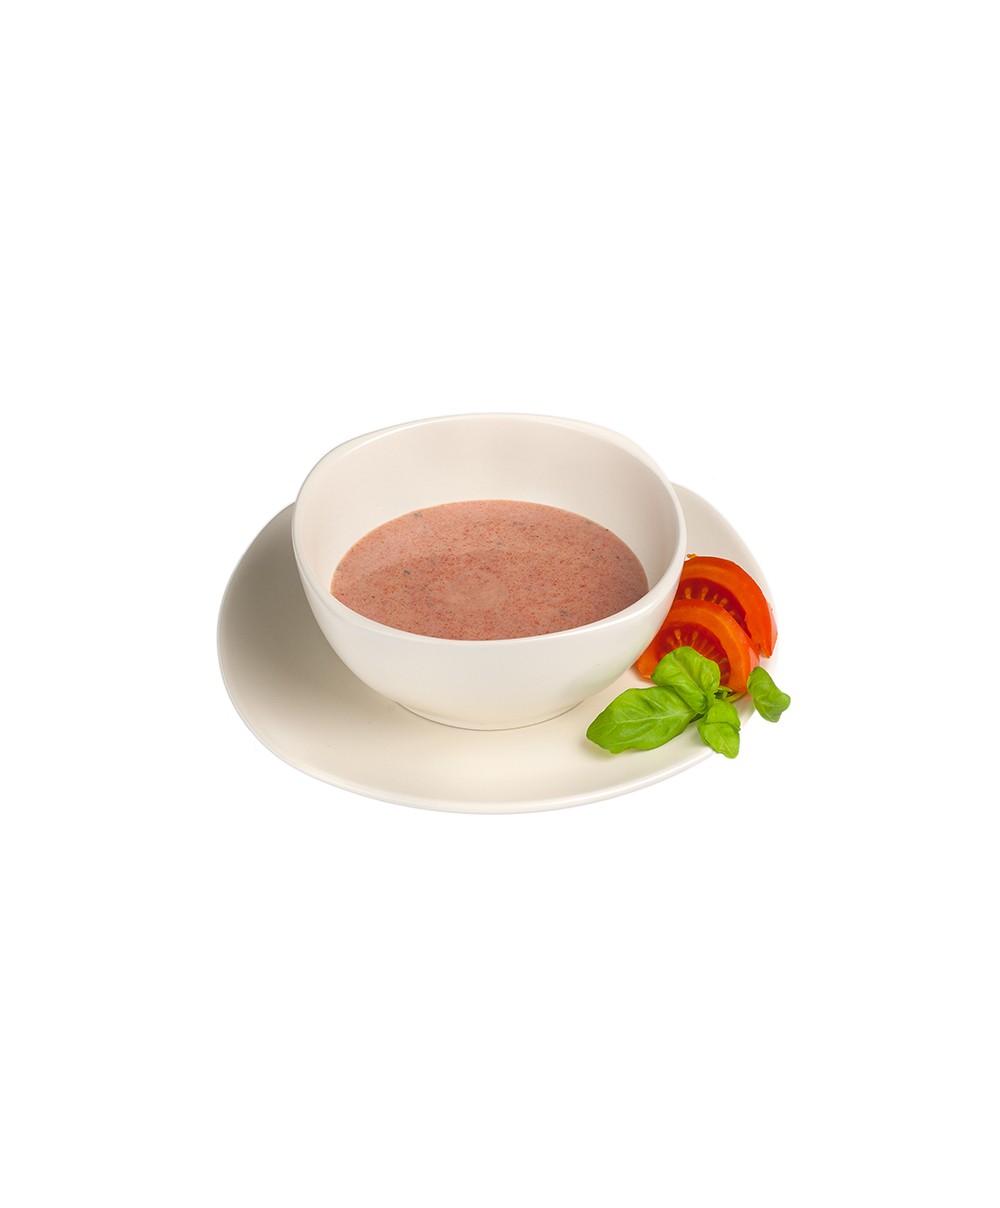 ketodiéta rajčinová polievka 25 g